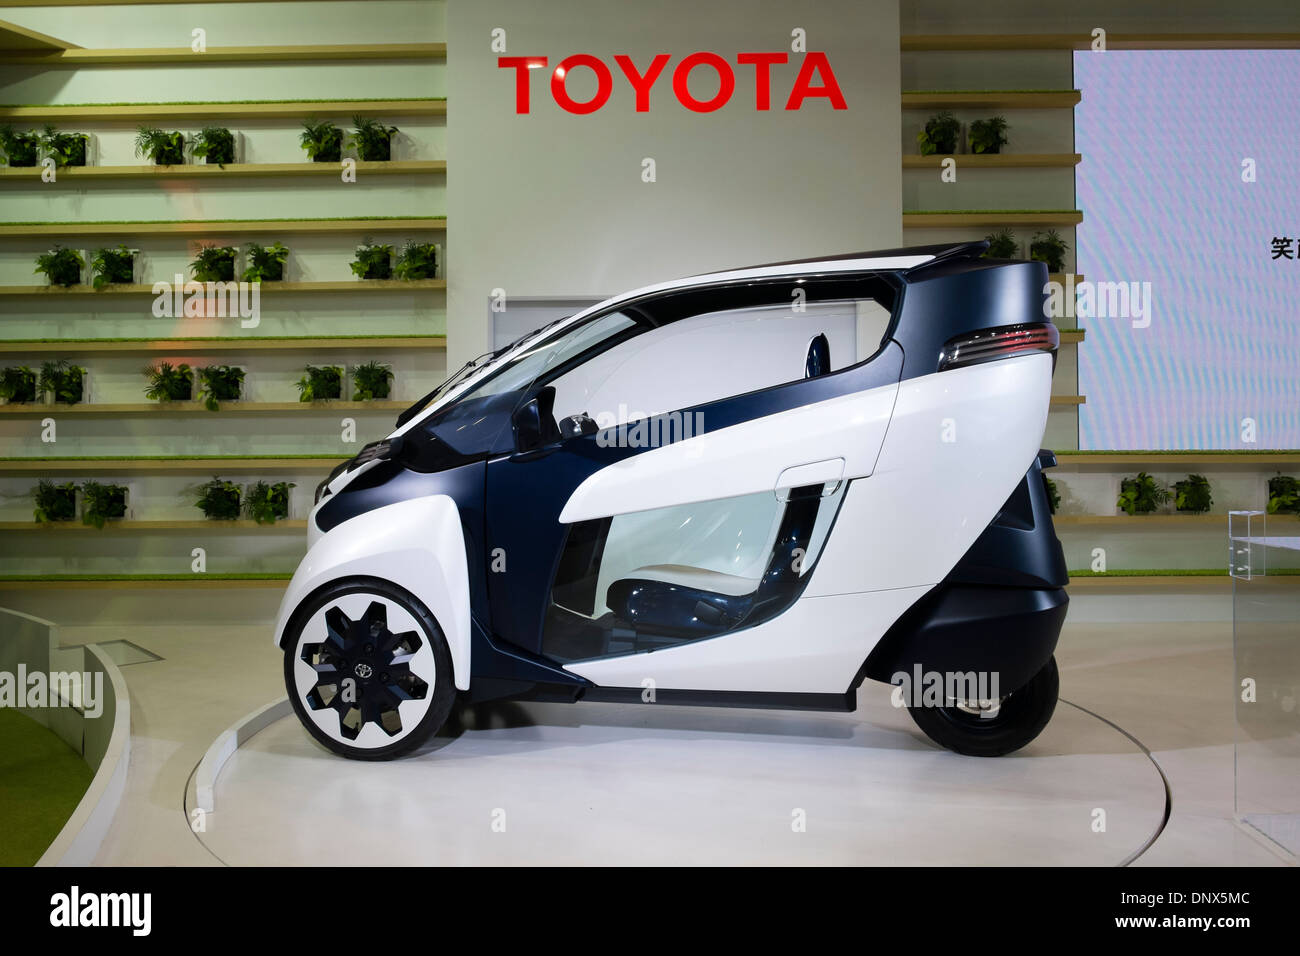 I-Ride électrique Toyota véhicule concept au Salon de l'automobile 2013 au Japon Banque D'Images